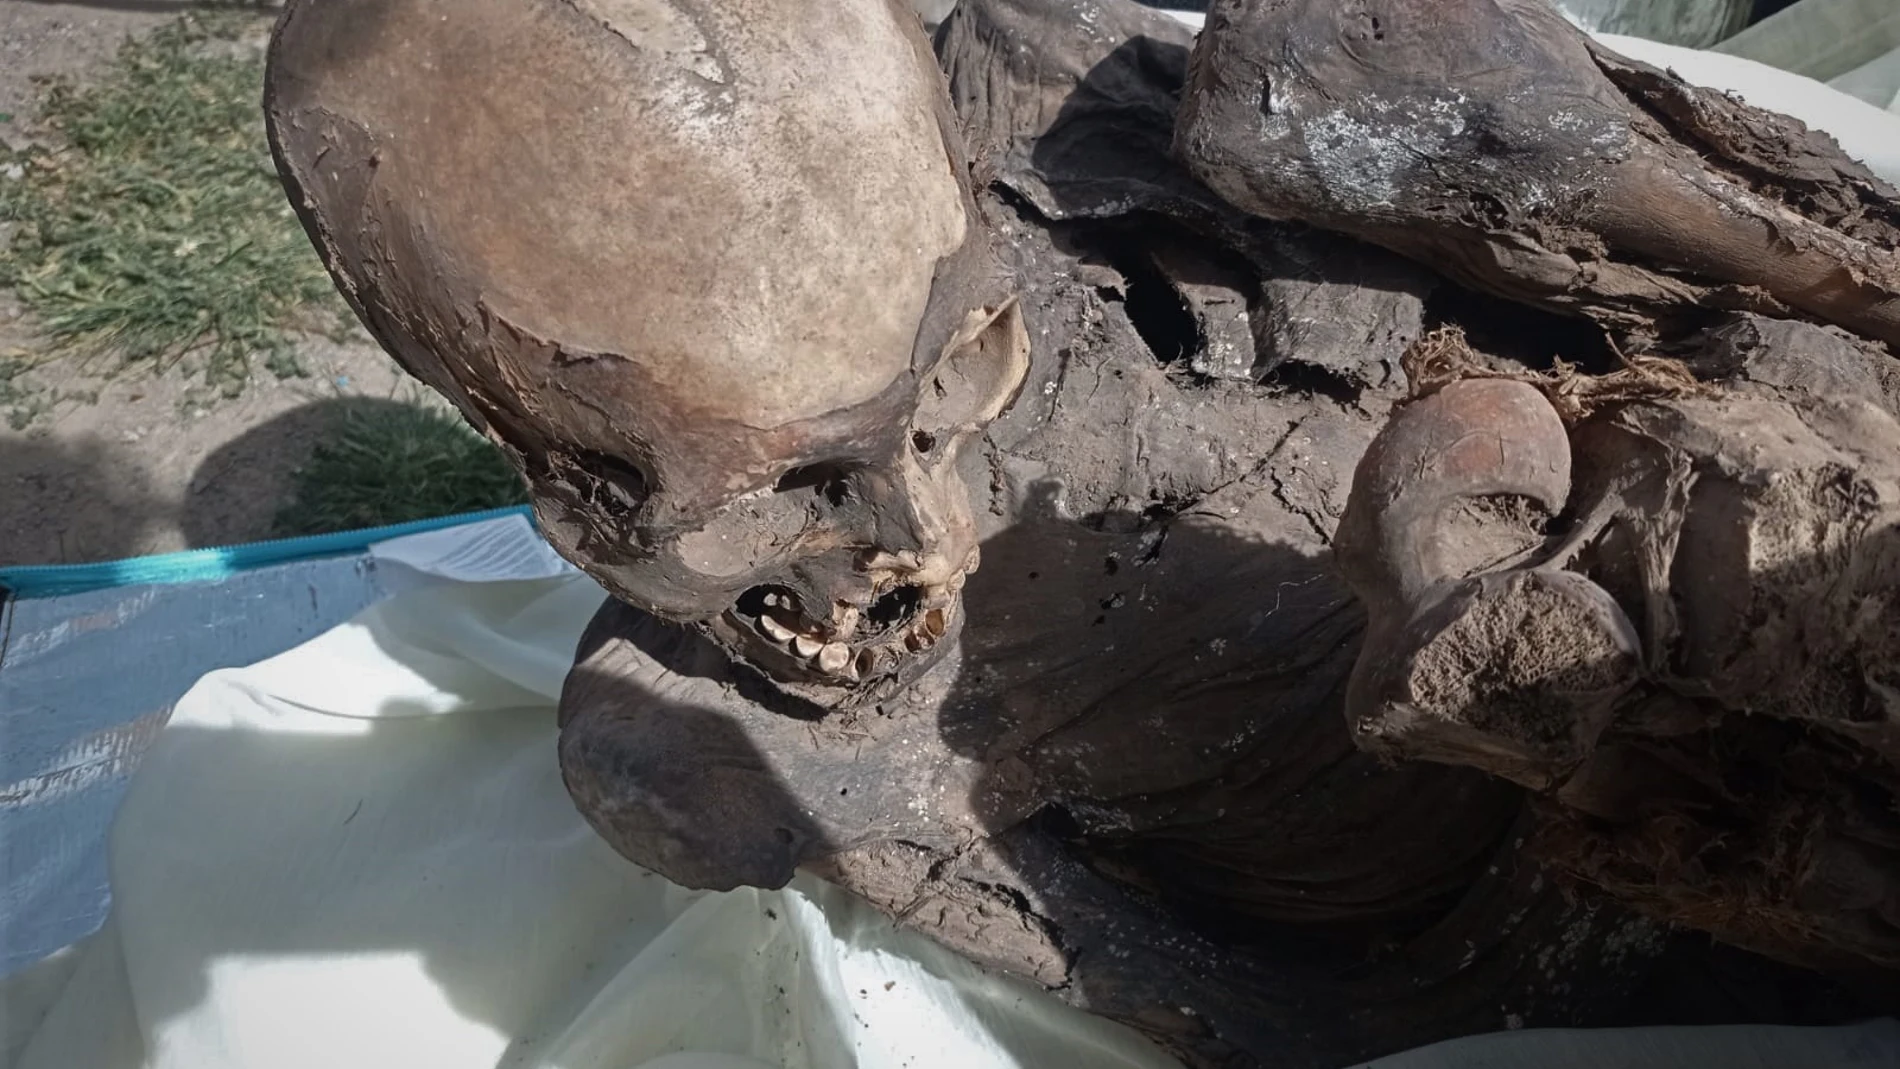 Una momia prehispánica, de entre 600 y 800 años de antigüedad, hallada dentro de la mochila de un repartidor de comida rápida en Perú.